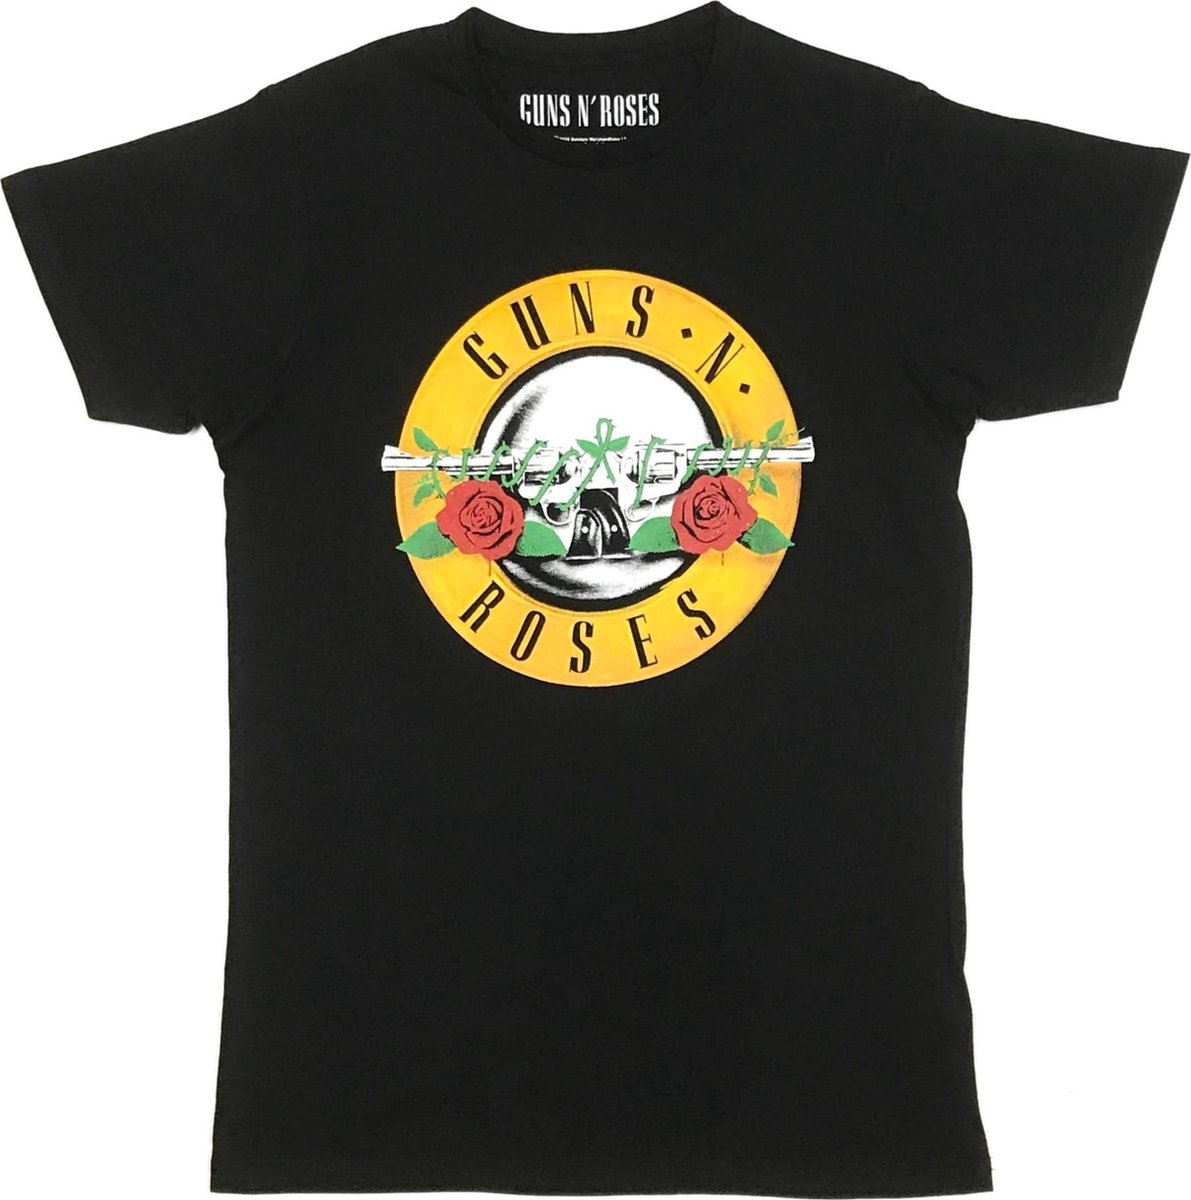 Guns N' Roses - T-shirt - Unisex - Extra Extra Large